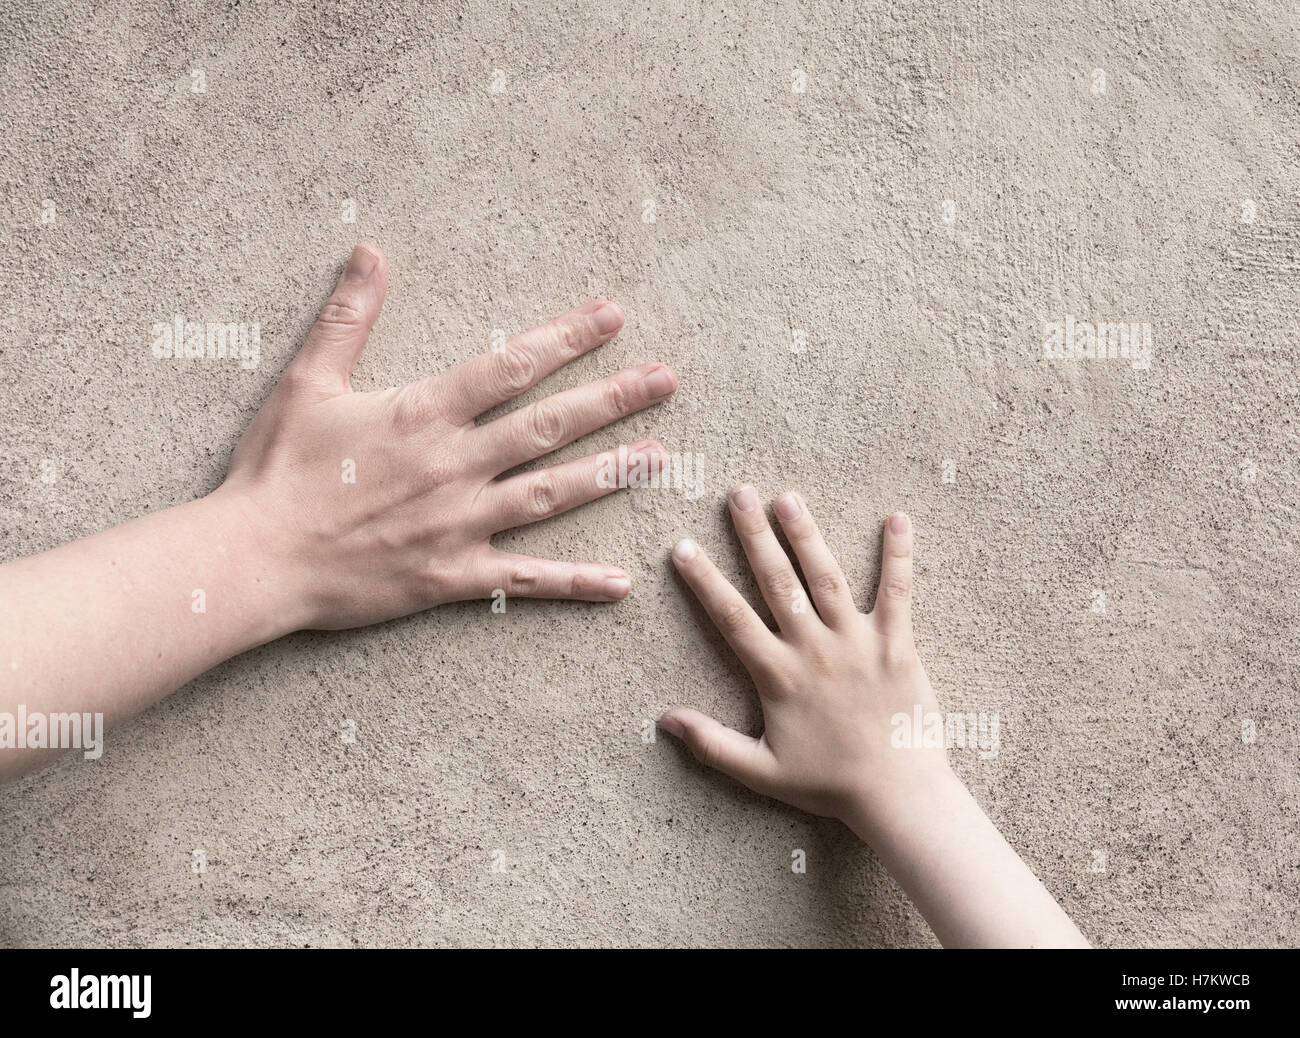 Les deux mains de la connexion. Adulte et enfant part rencontrer, toucher un mur. Image conceptuelle de la liaison entre le parent et l'enfant. Banque D'Images